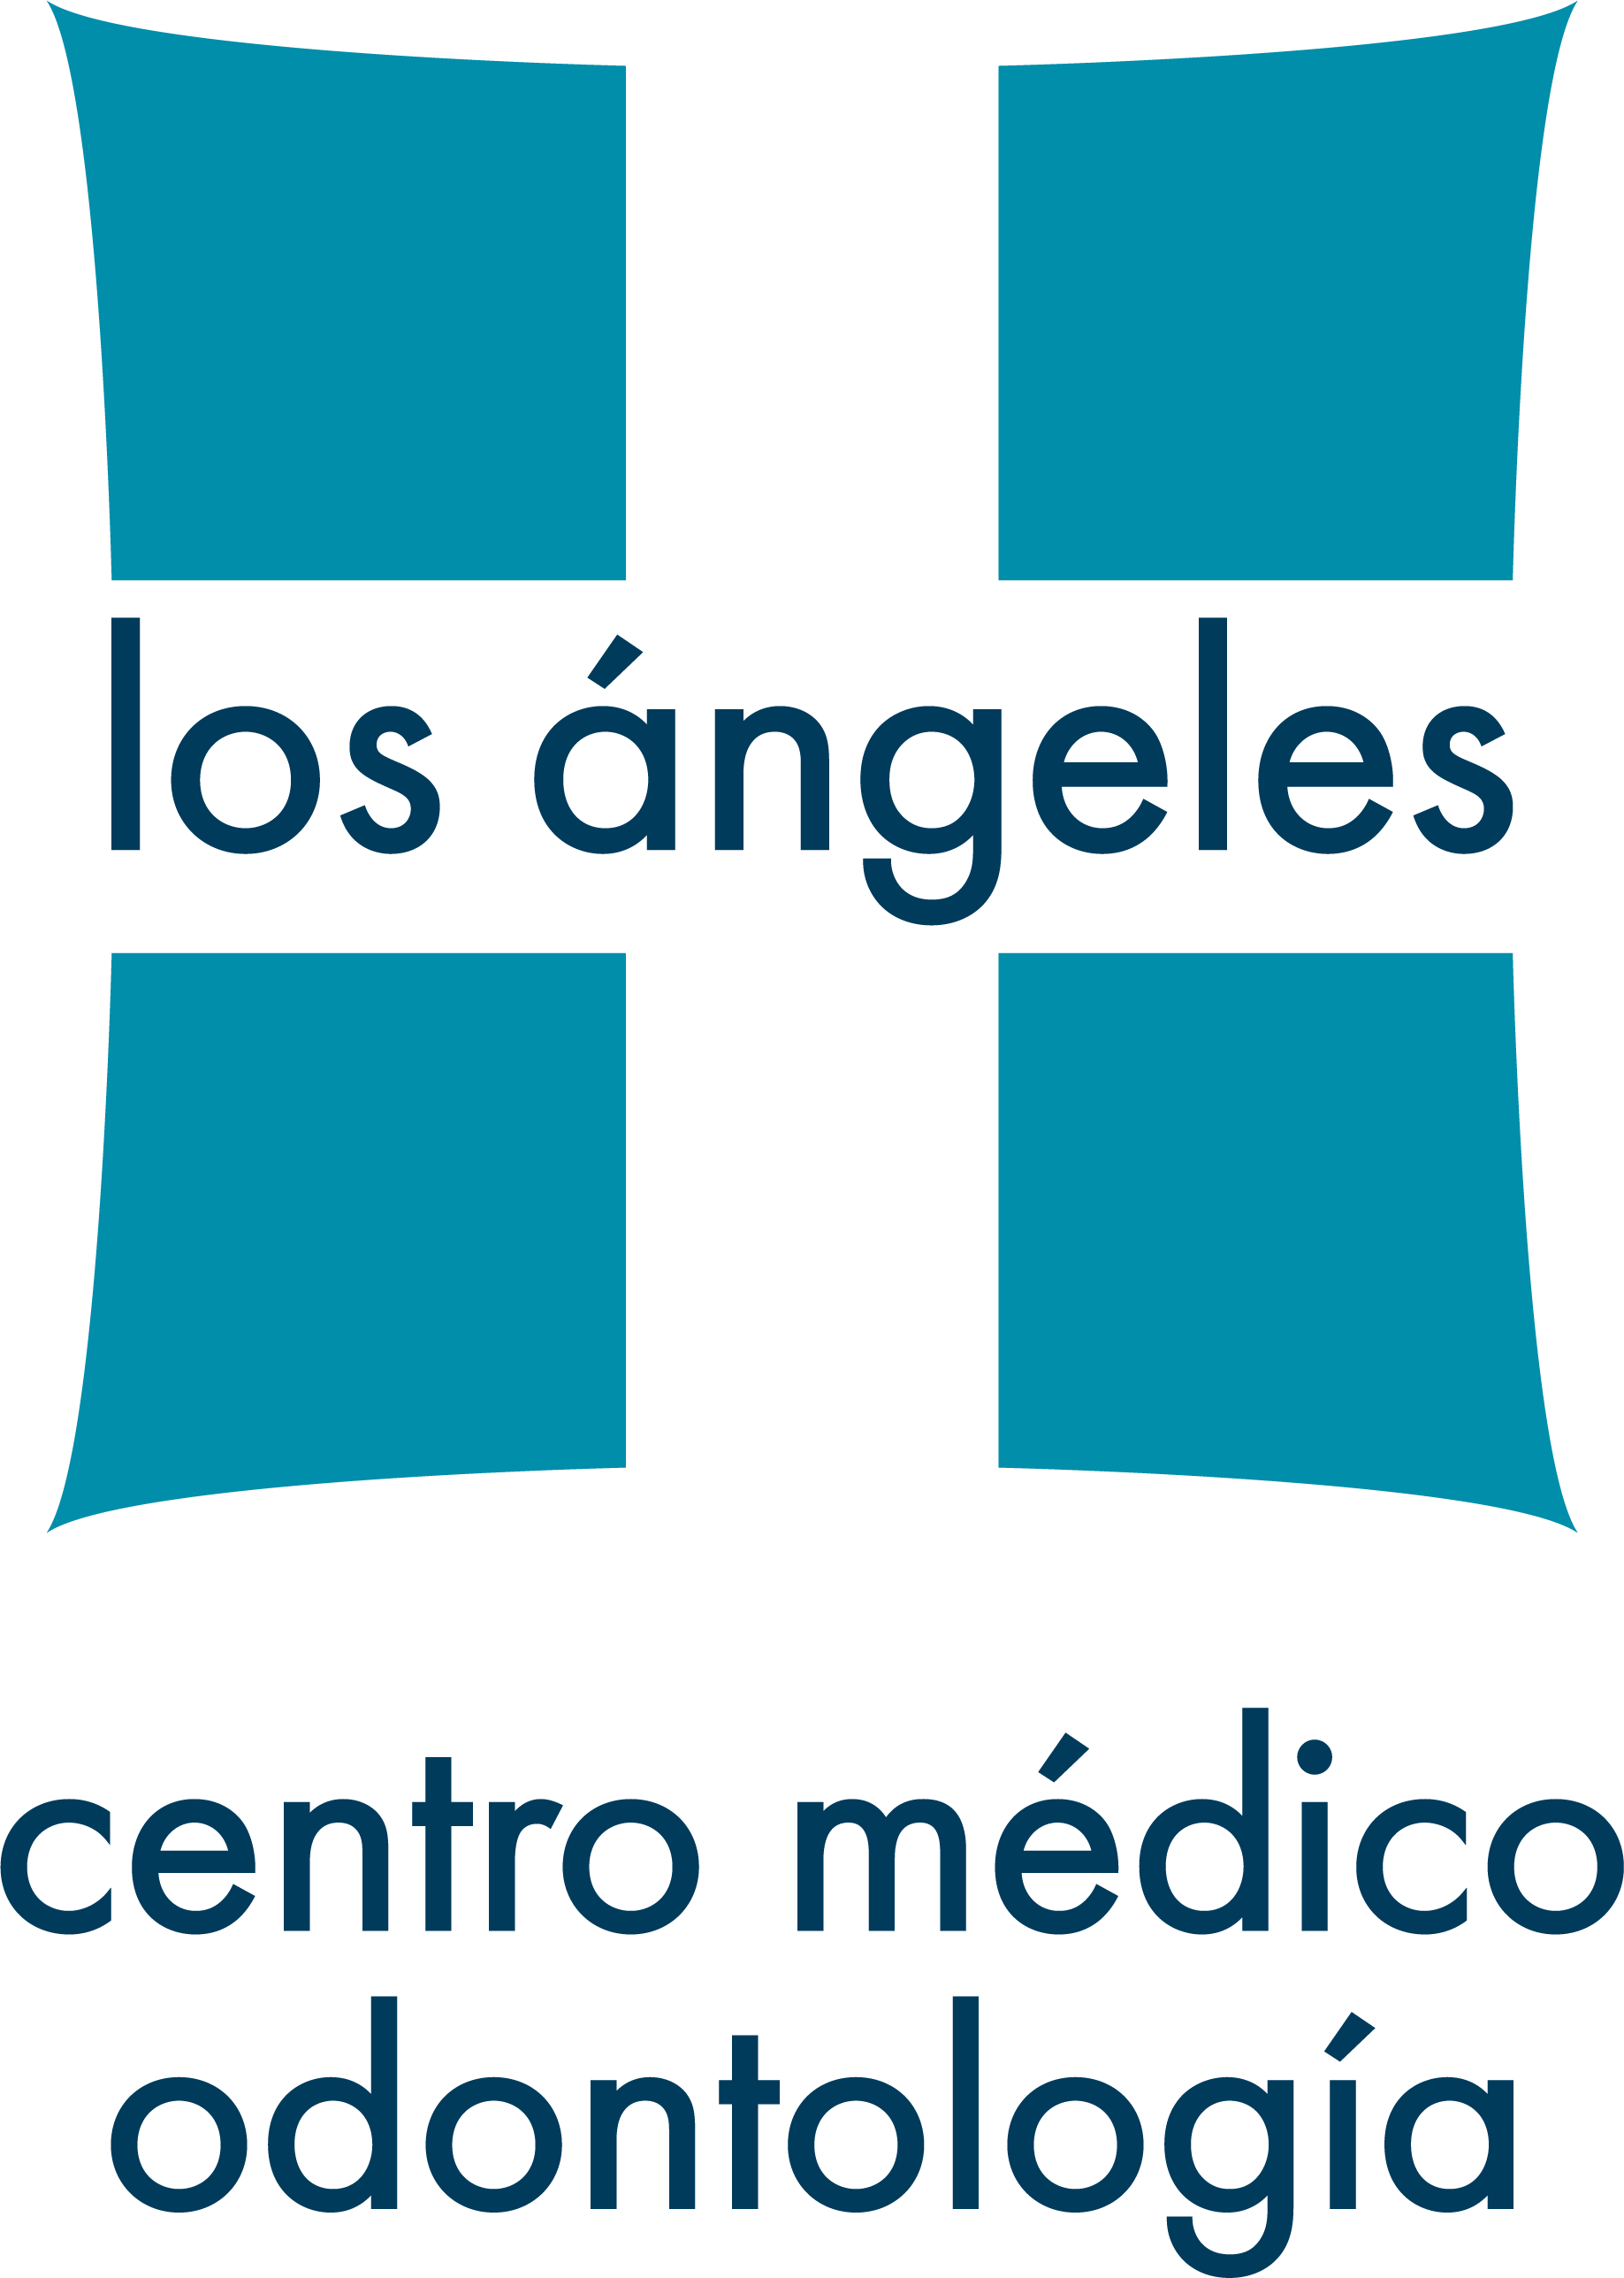 Logotipo de la clínica Centro Odontológico Los Angeles